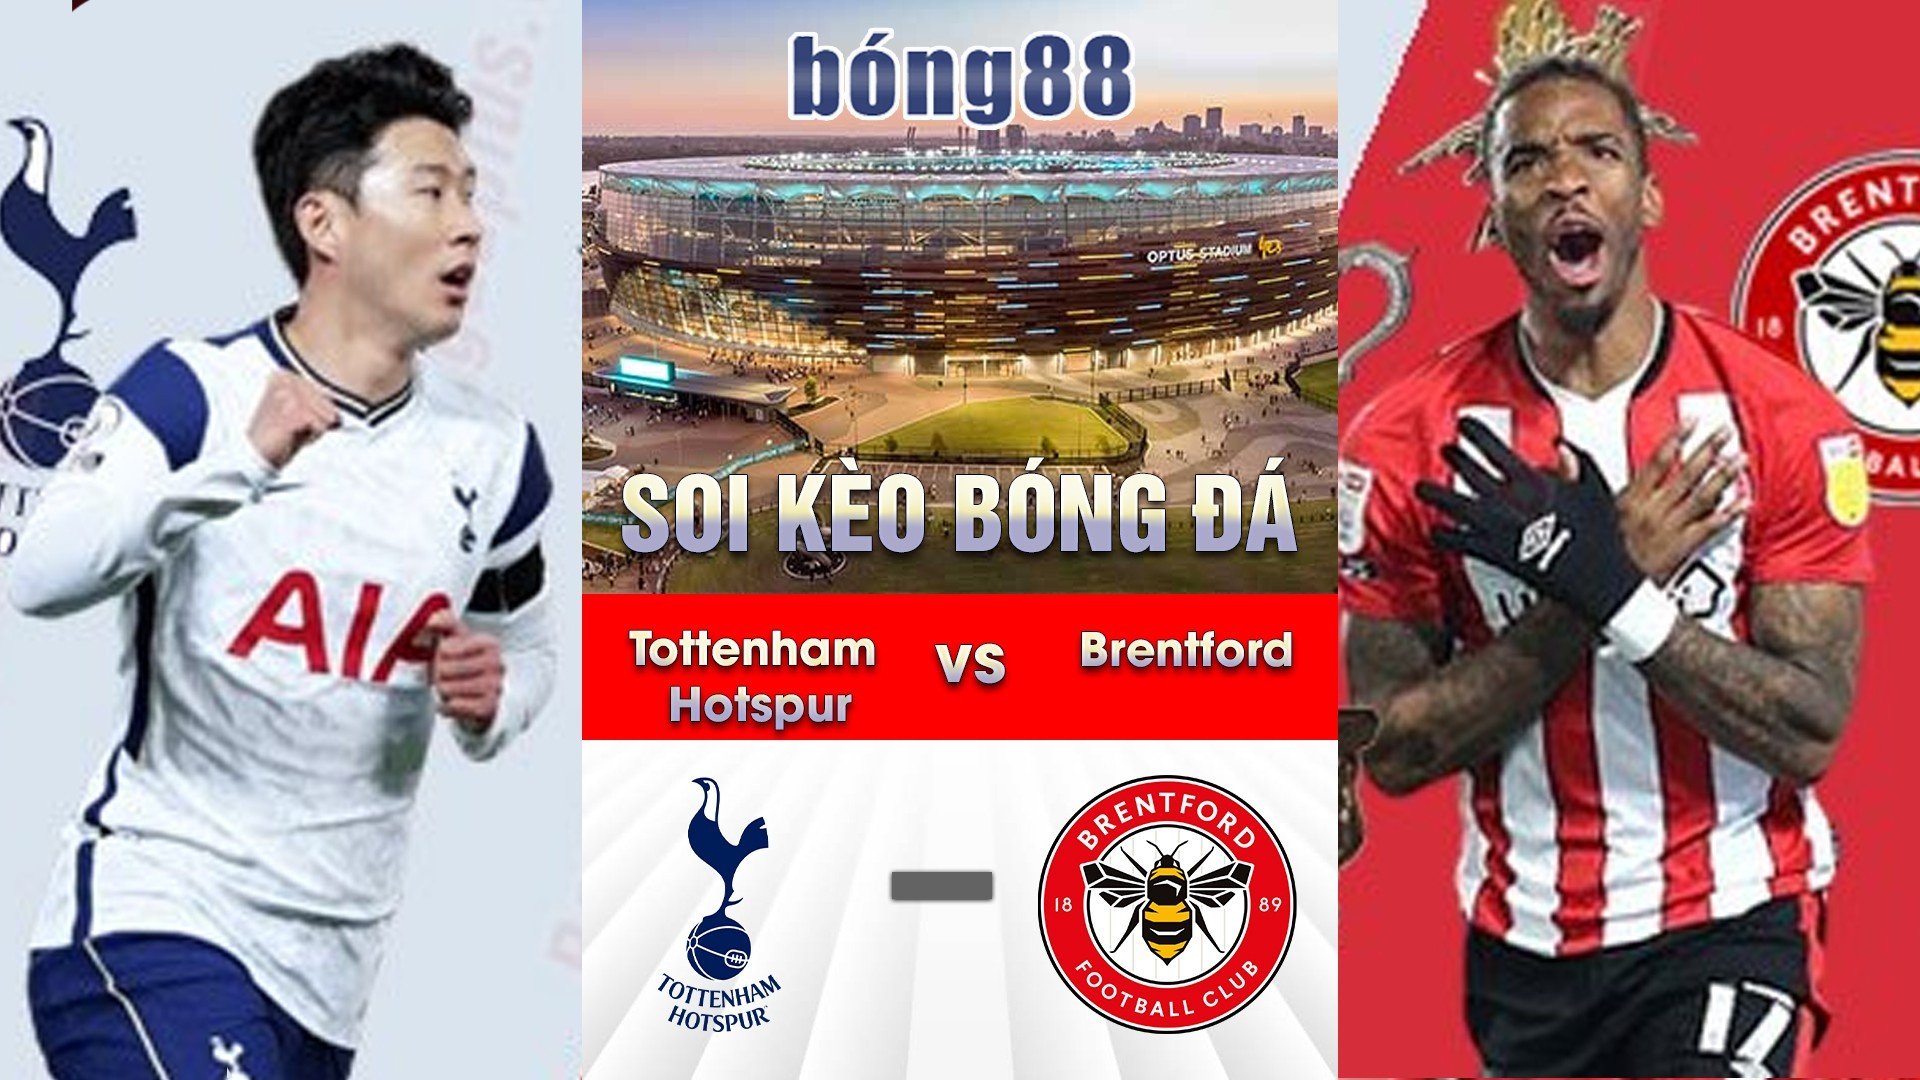 Soi kèo bóng đá giữa Tottenham Hotspur và Brentford 01